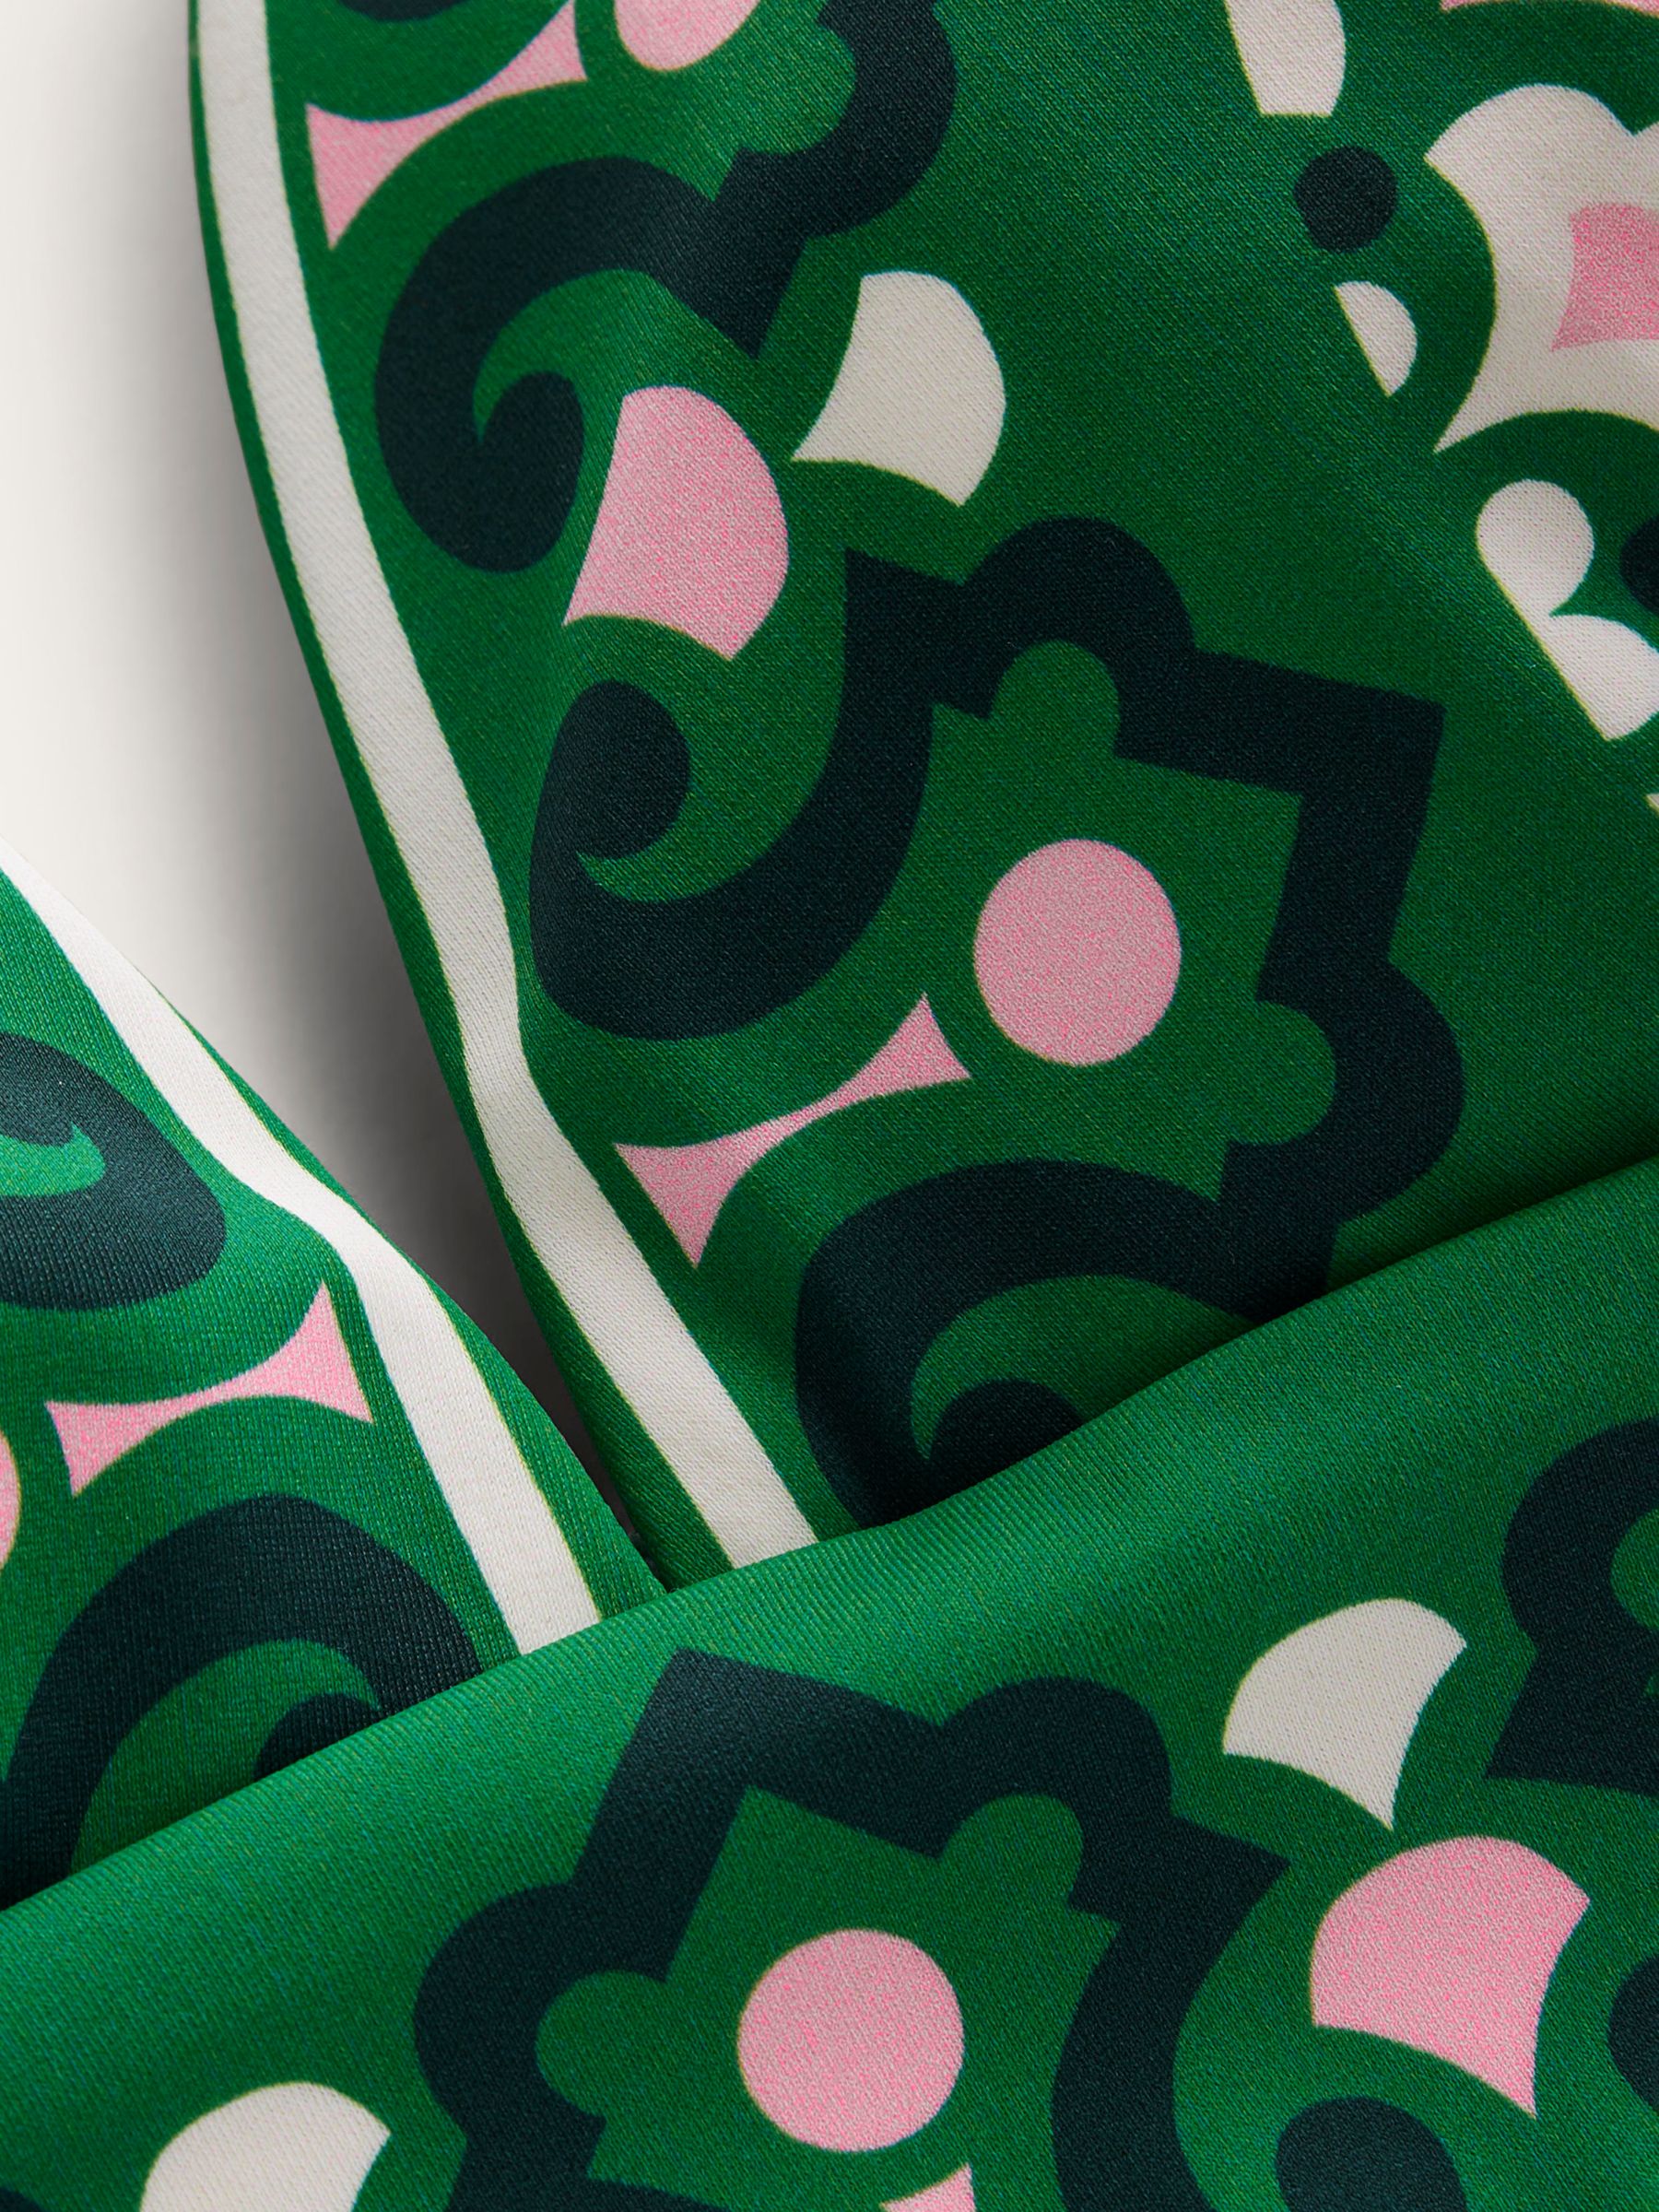 Boden Porto Artisian Geometric Print Bikini Crop Top, Green/Multi, 8